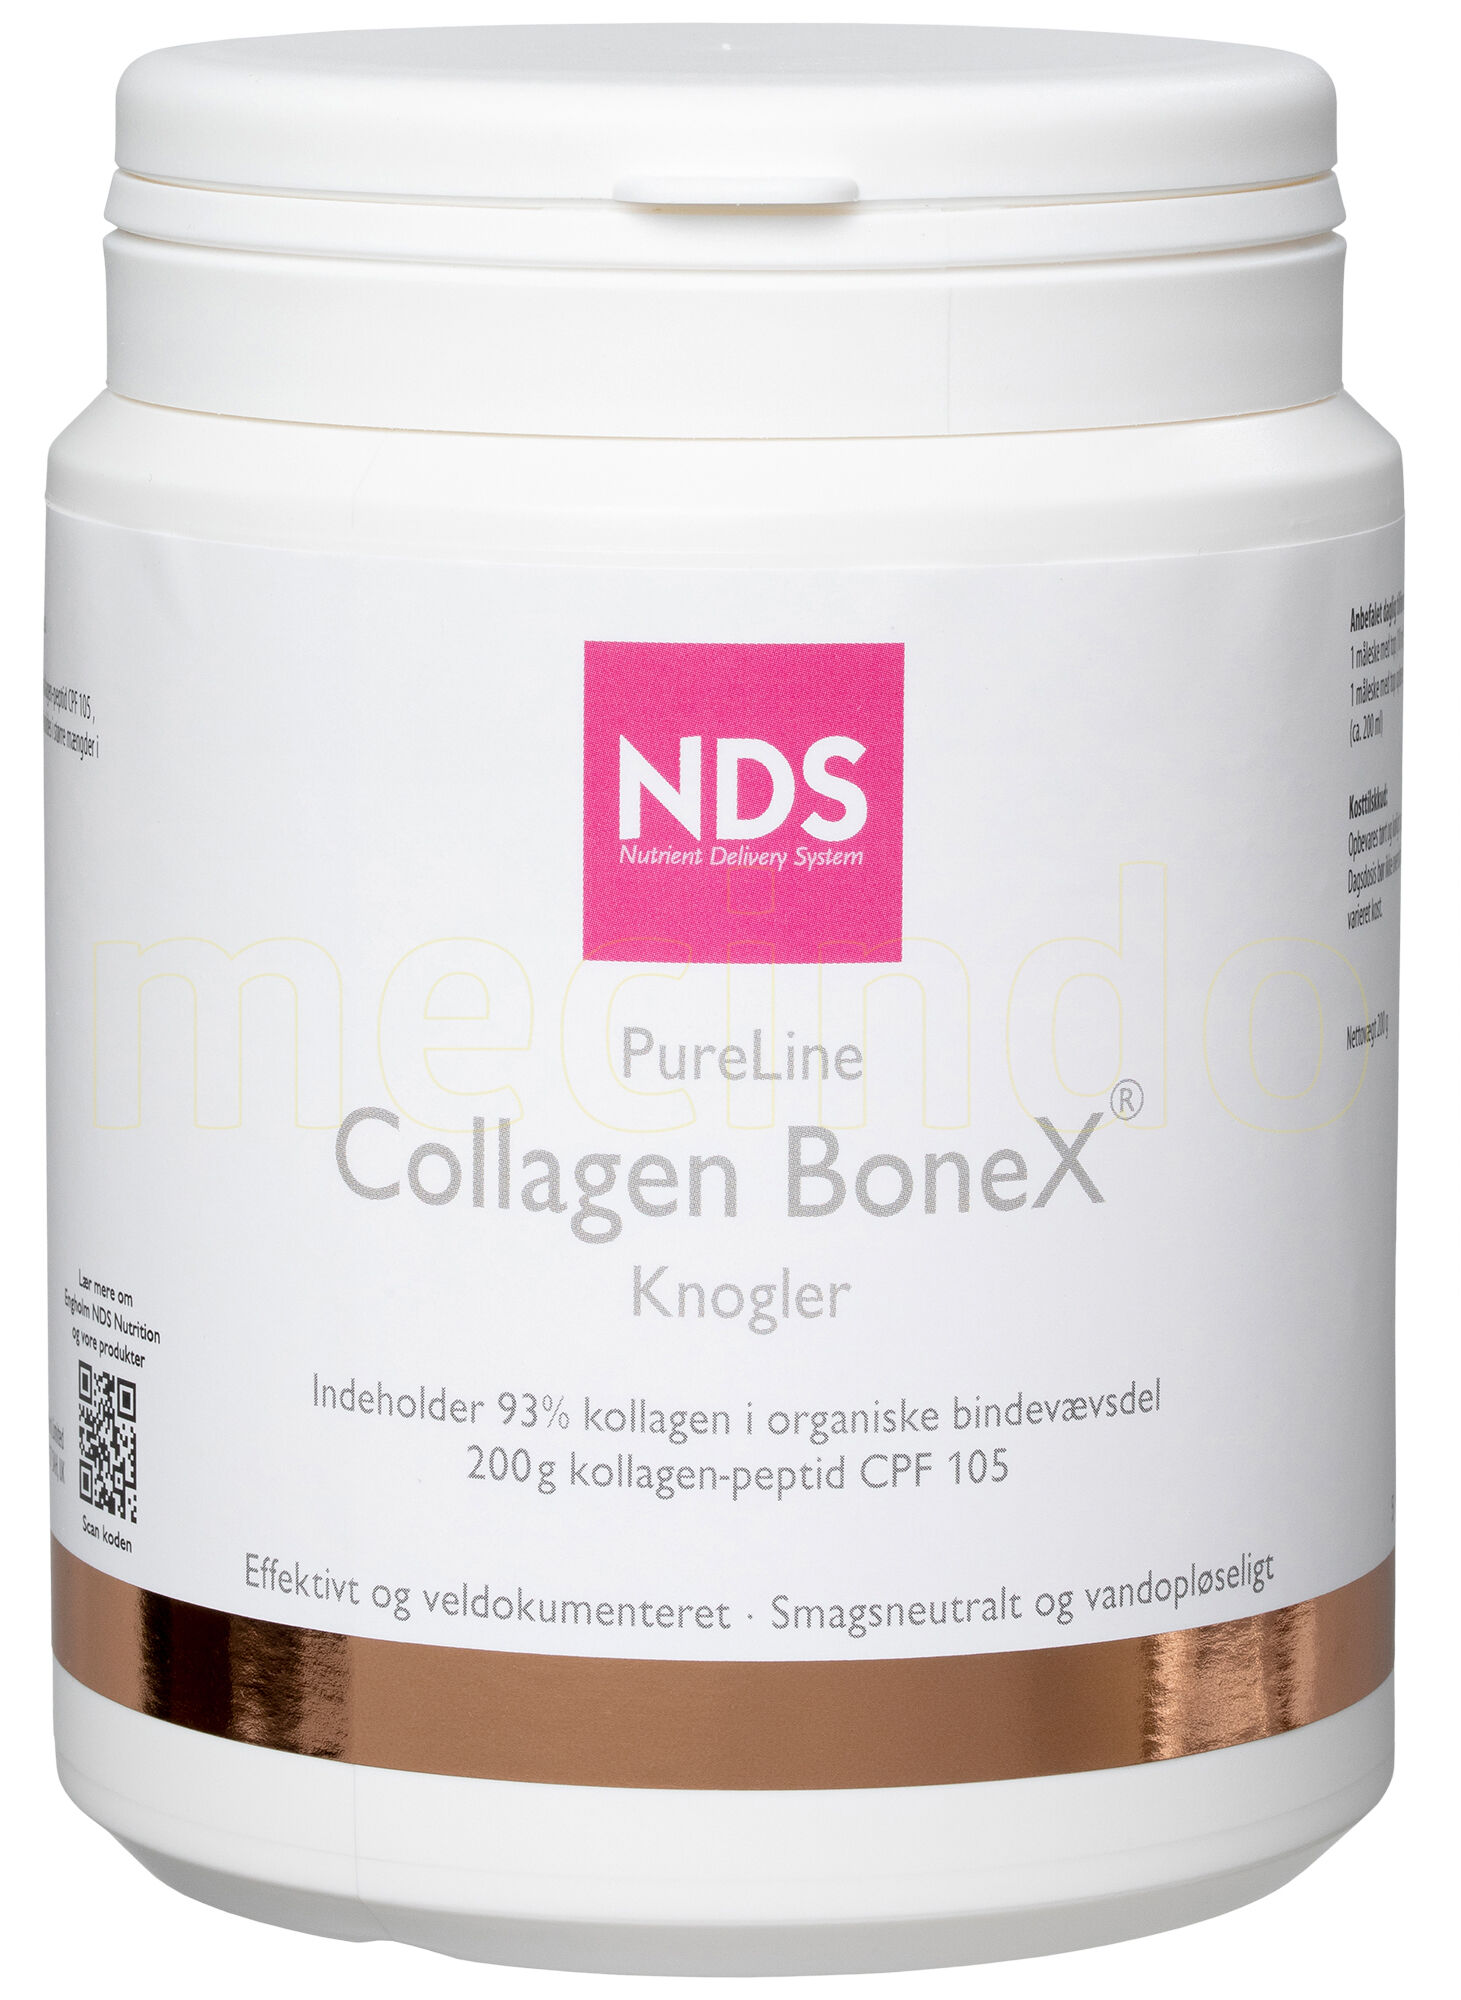 NDS Pureline Collagen Bonex - 200 g